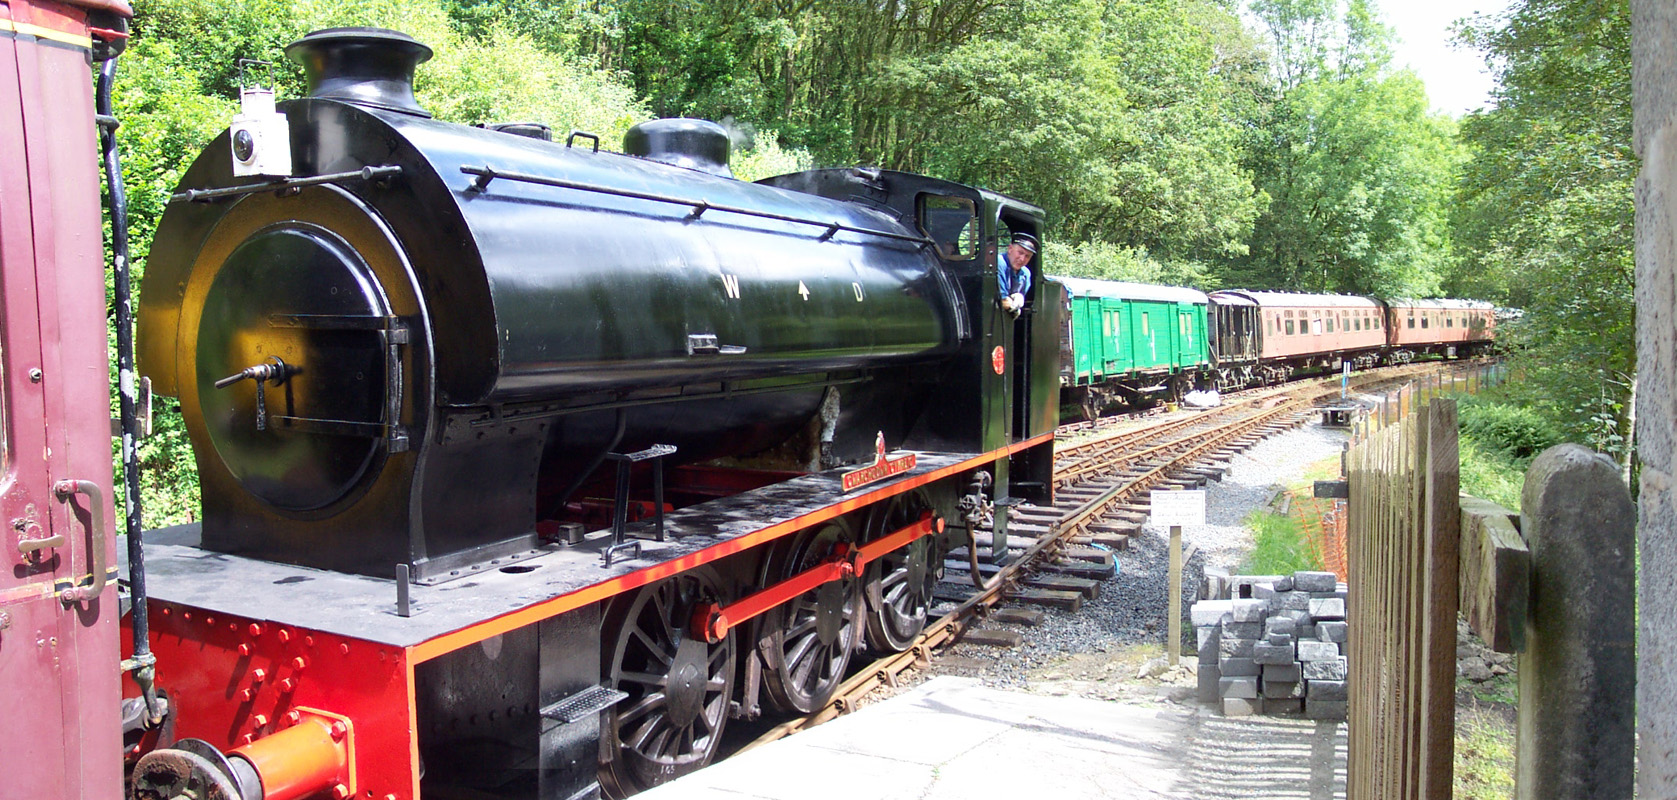 gwili railway steam
